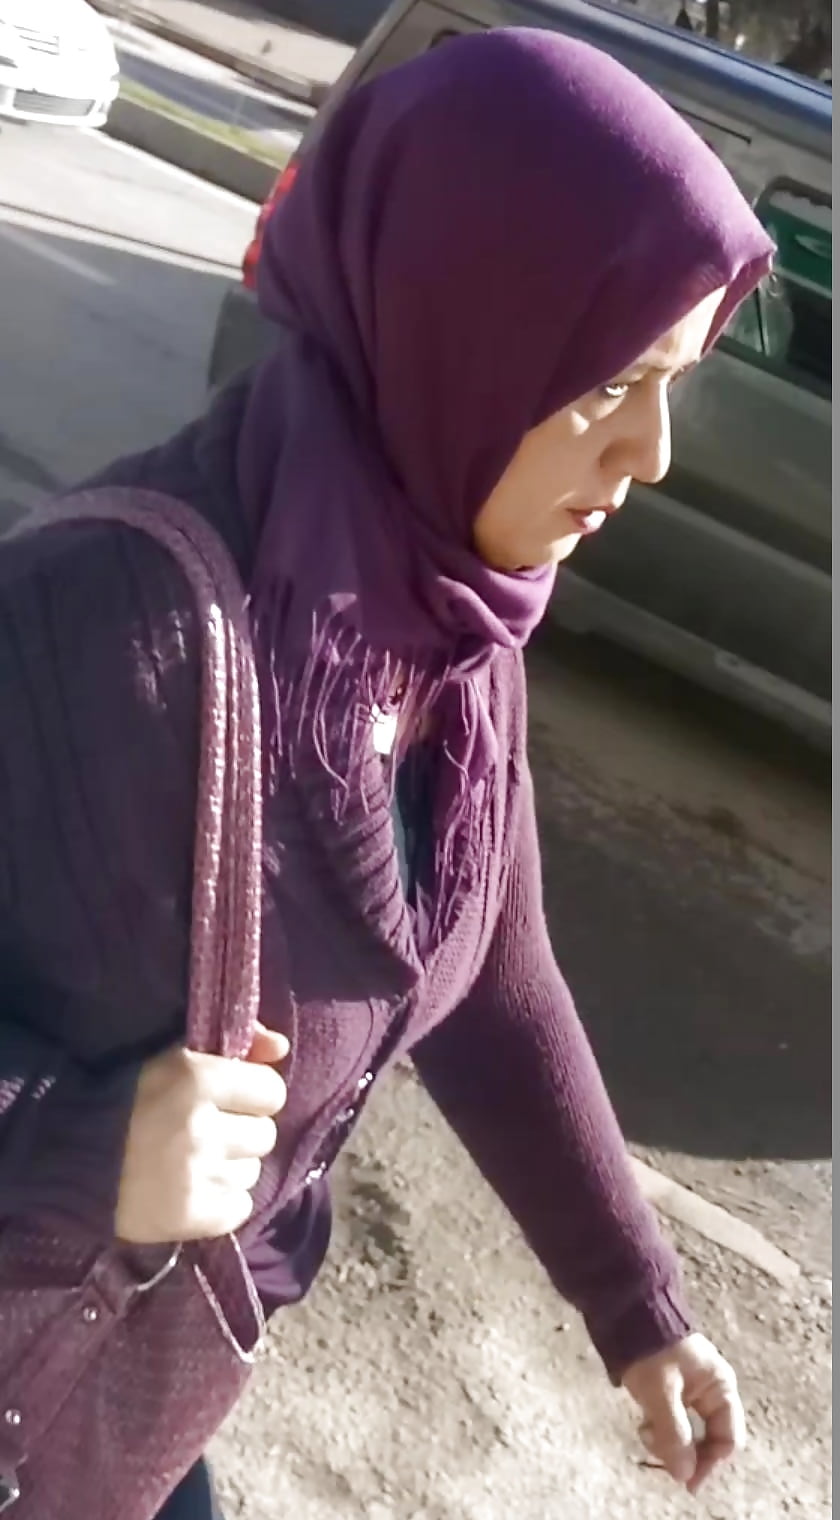 Arab Street Spy Boobs Milf Moms Hijab Vol Pics Xhamster My XXX Hot Girl foto